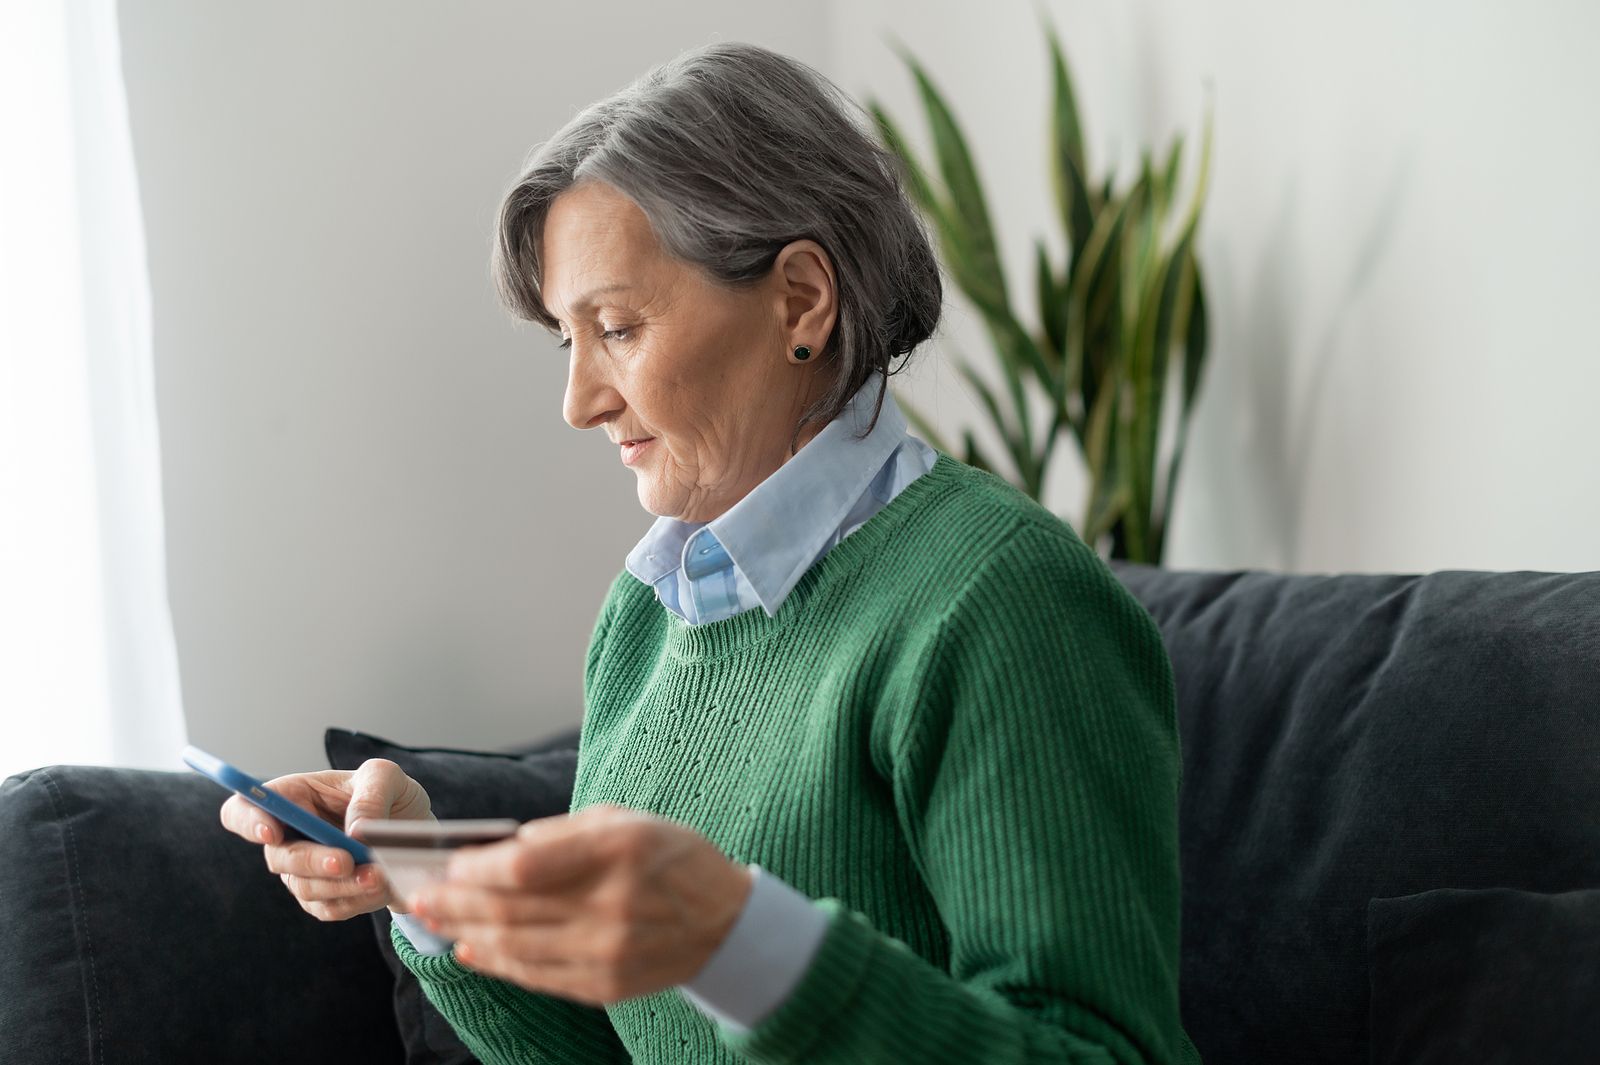 Edadismo en los estudios sobre el uso de la banca móvil: los mayores de 65 años no existen